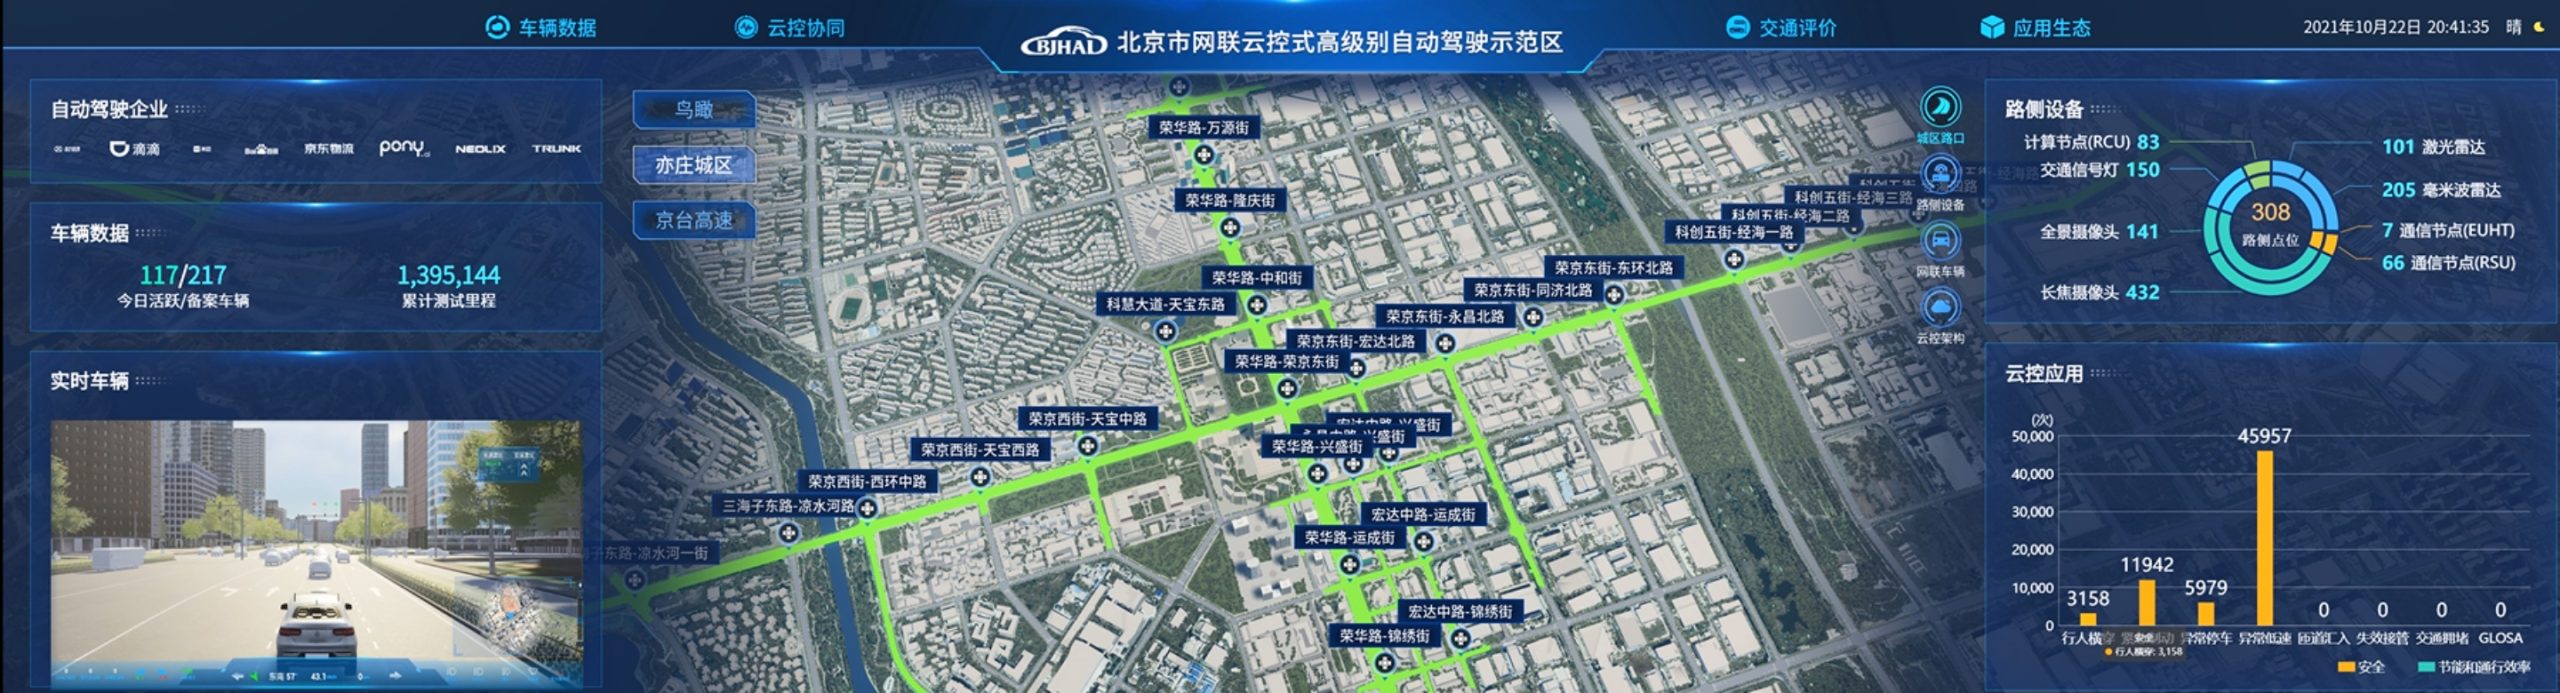 北京市网联云控高级别自动驾驶示范区.jpg